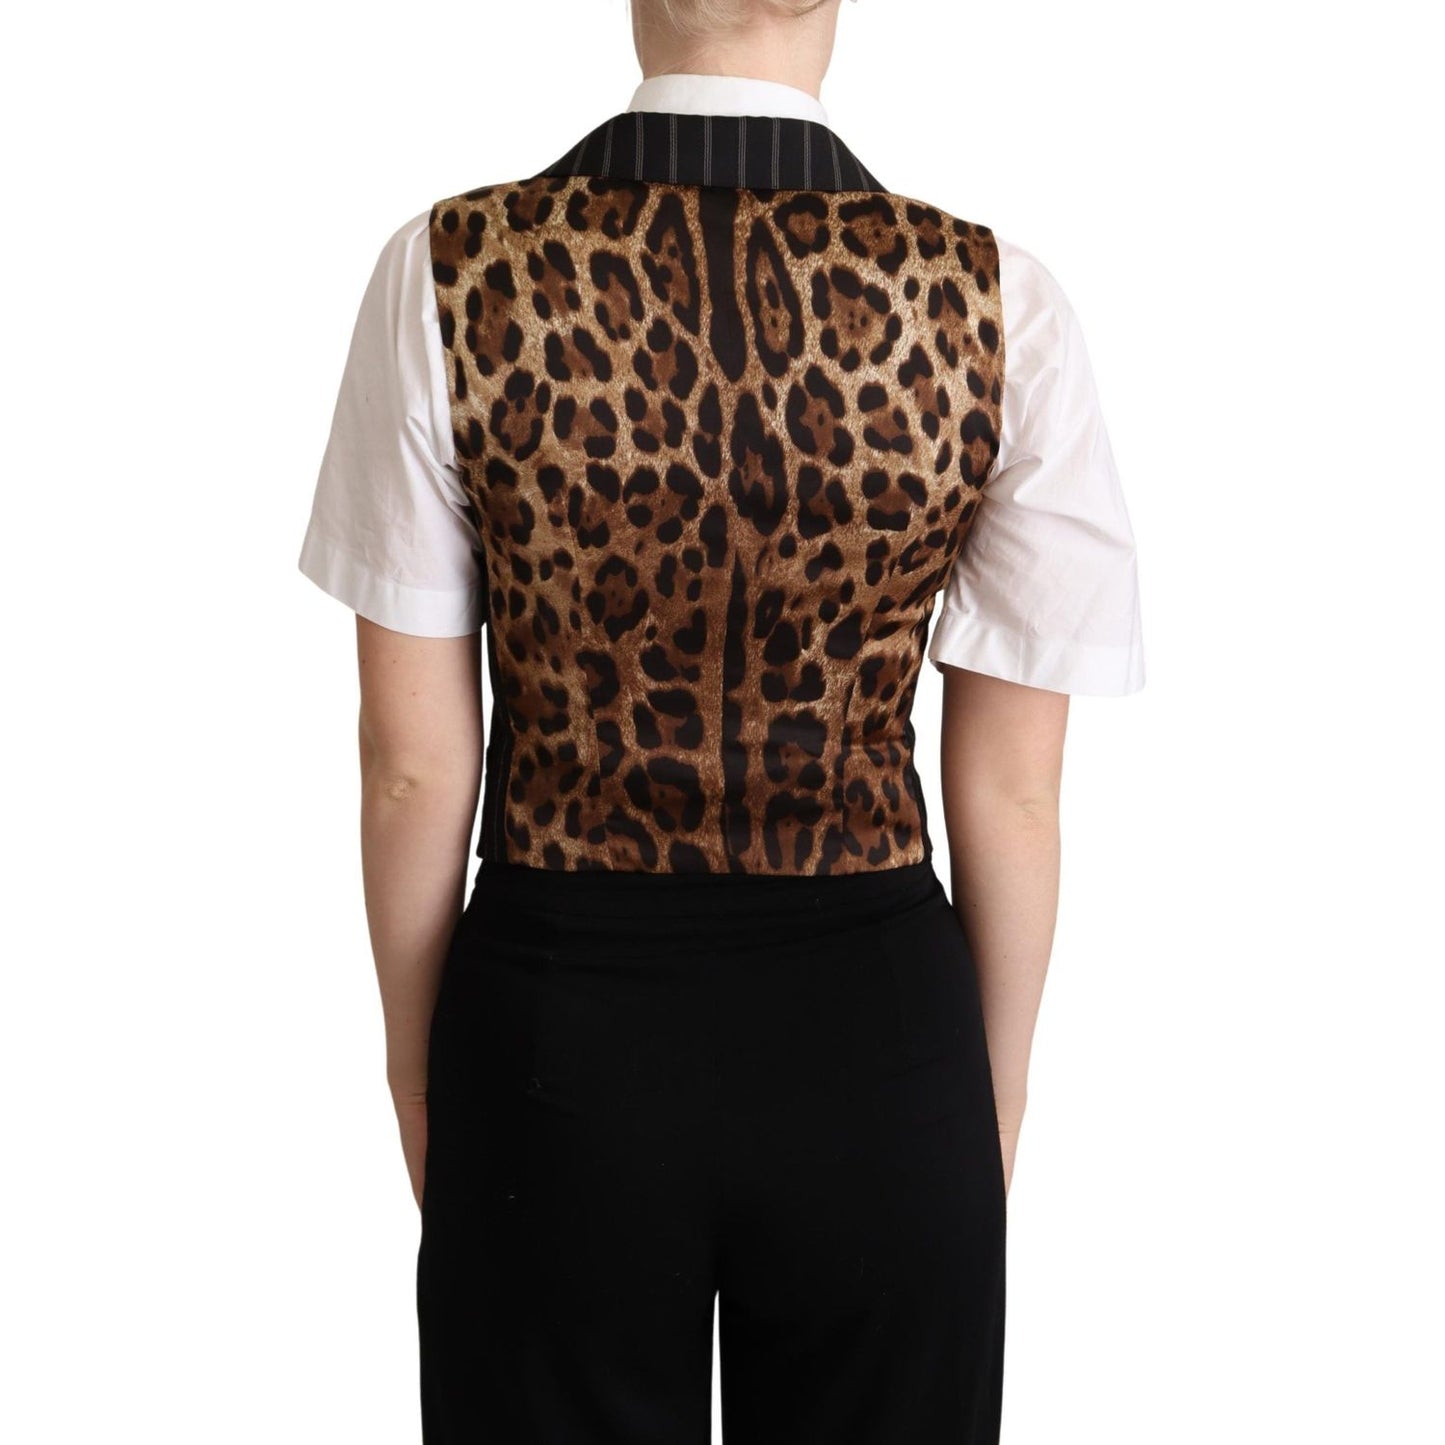 Dolce & GabbanaElegant Leopard Print Waistcoat – Sleeveless VestMcRichard Designer Brands£379.00